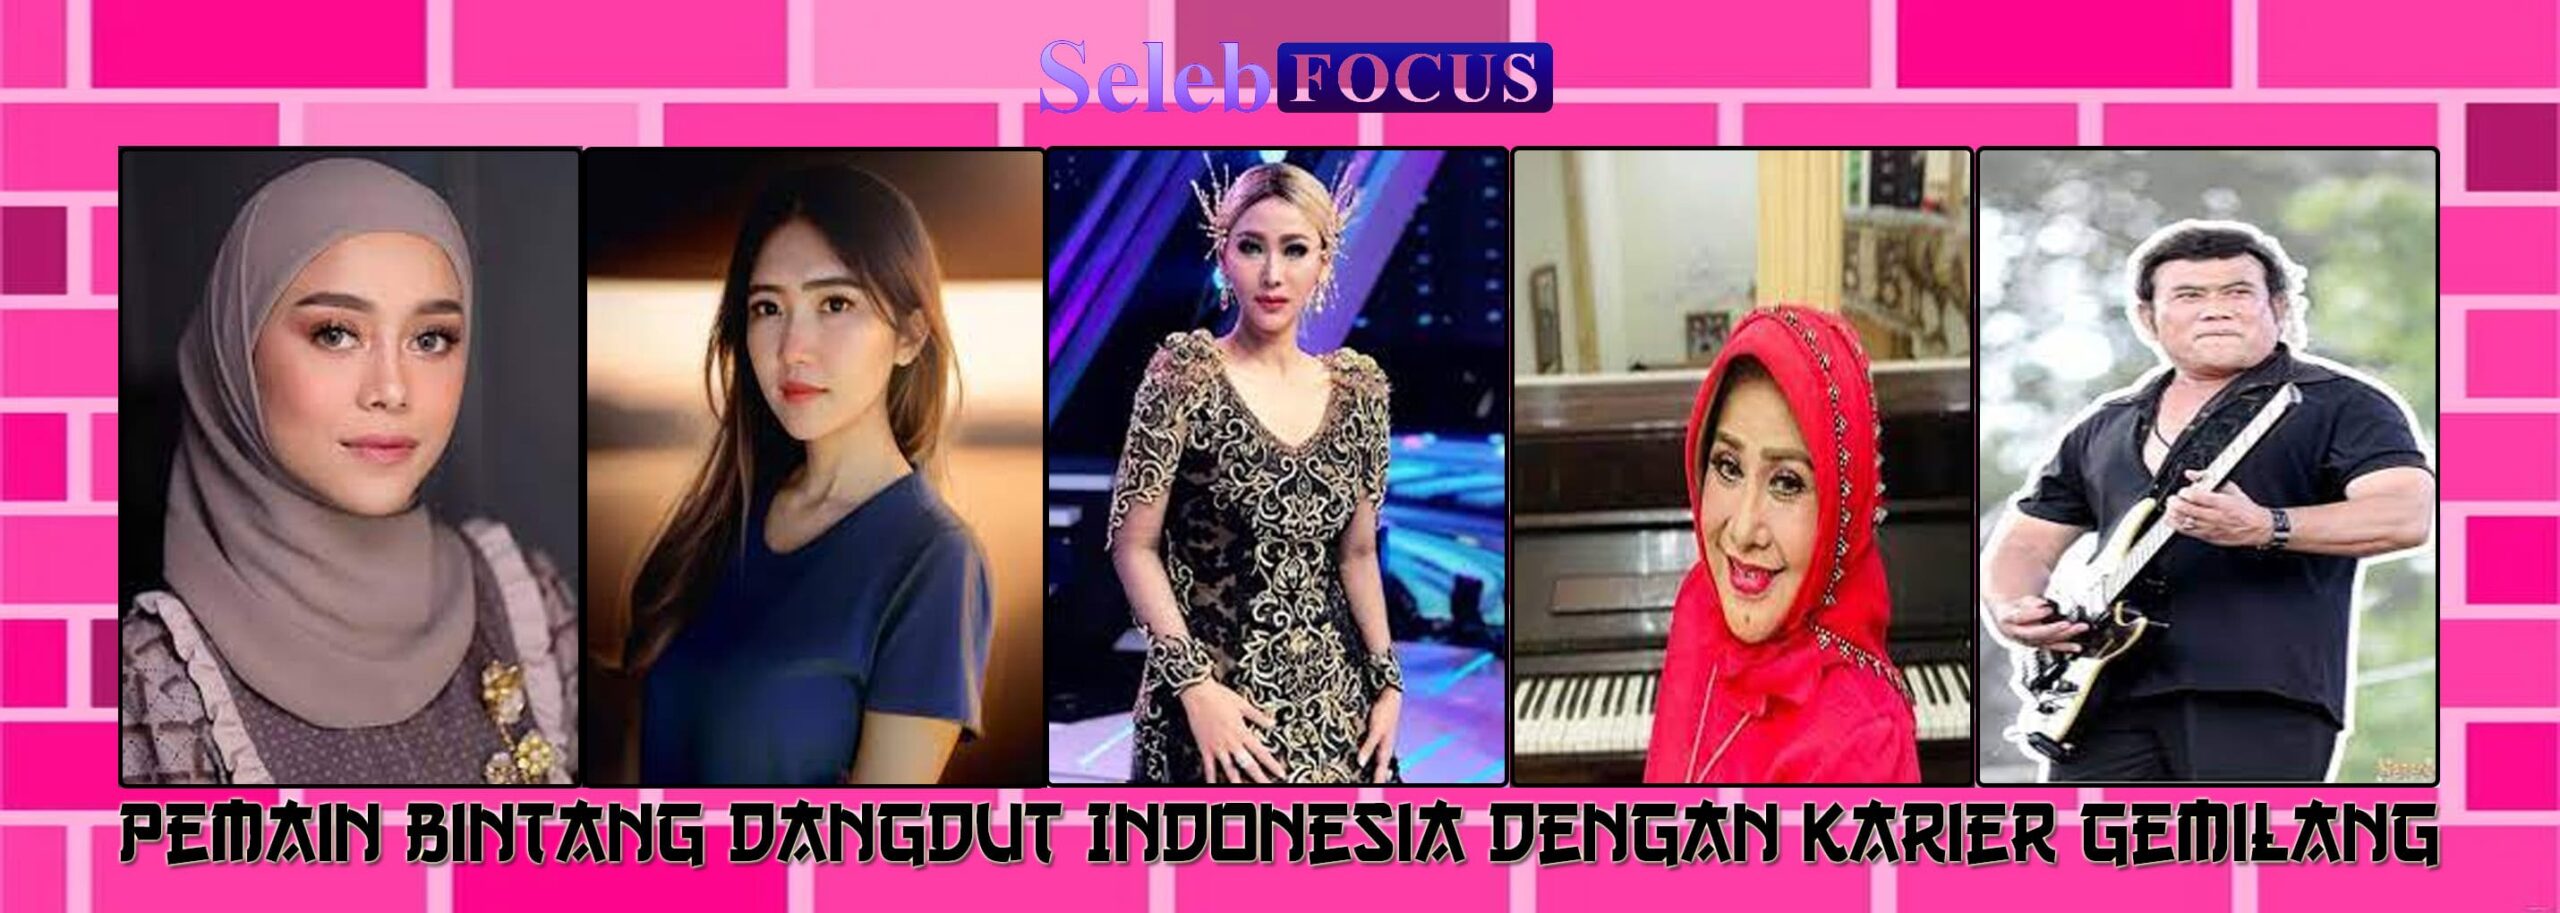 Pemain Bintang Dangdut Indonesia dengan Karier Gemilang